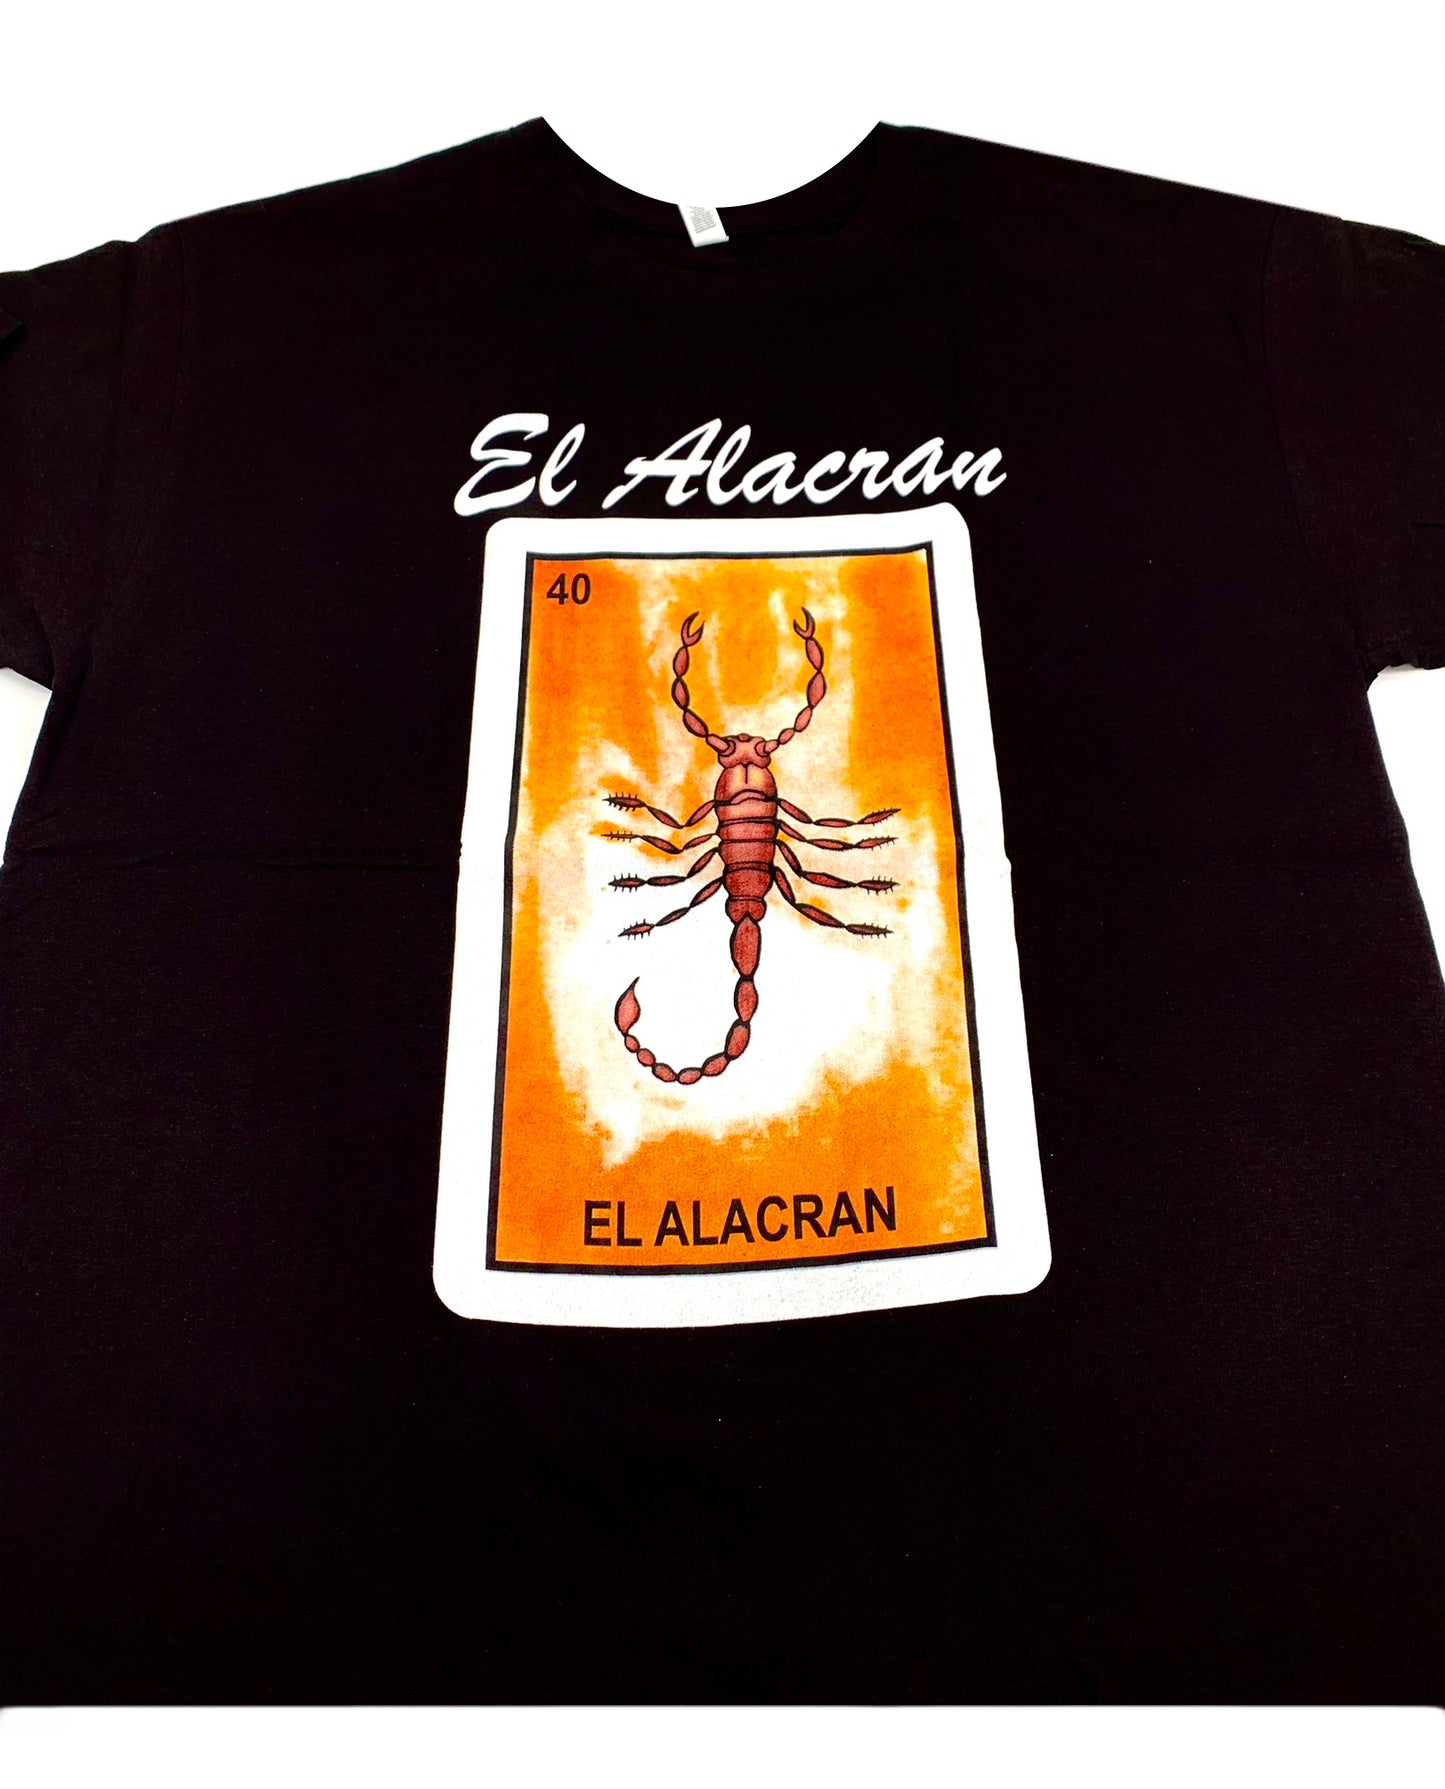 (12ct) Camisetas de El Alacrán $6.99 c/u